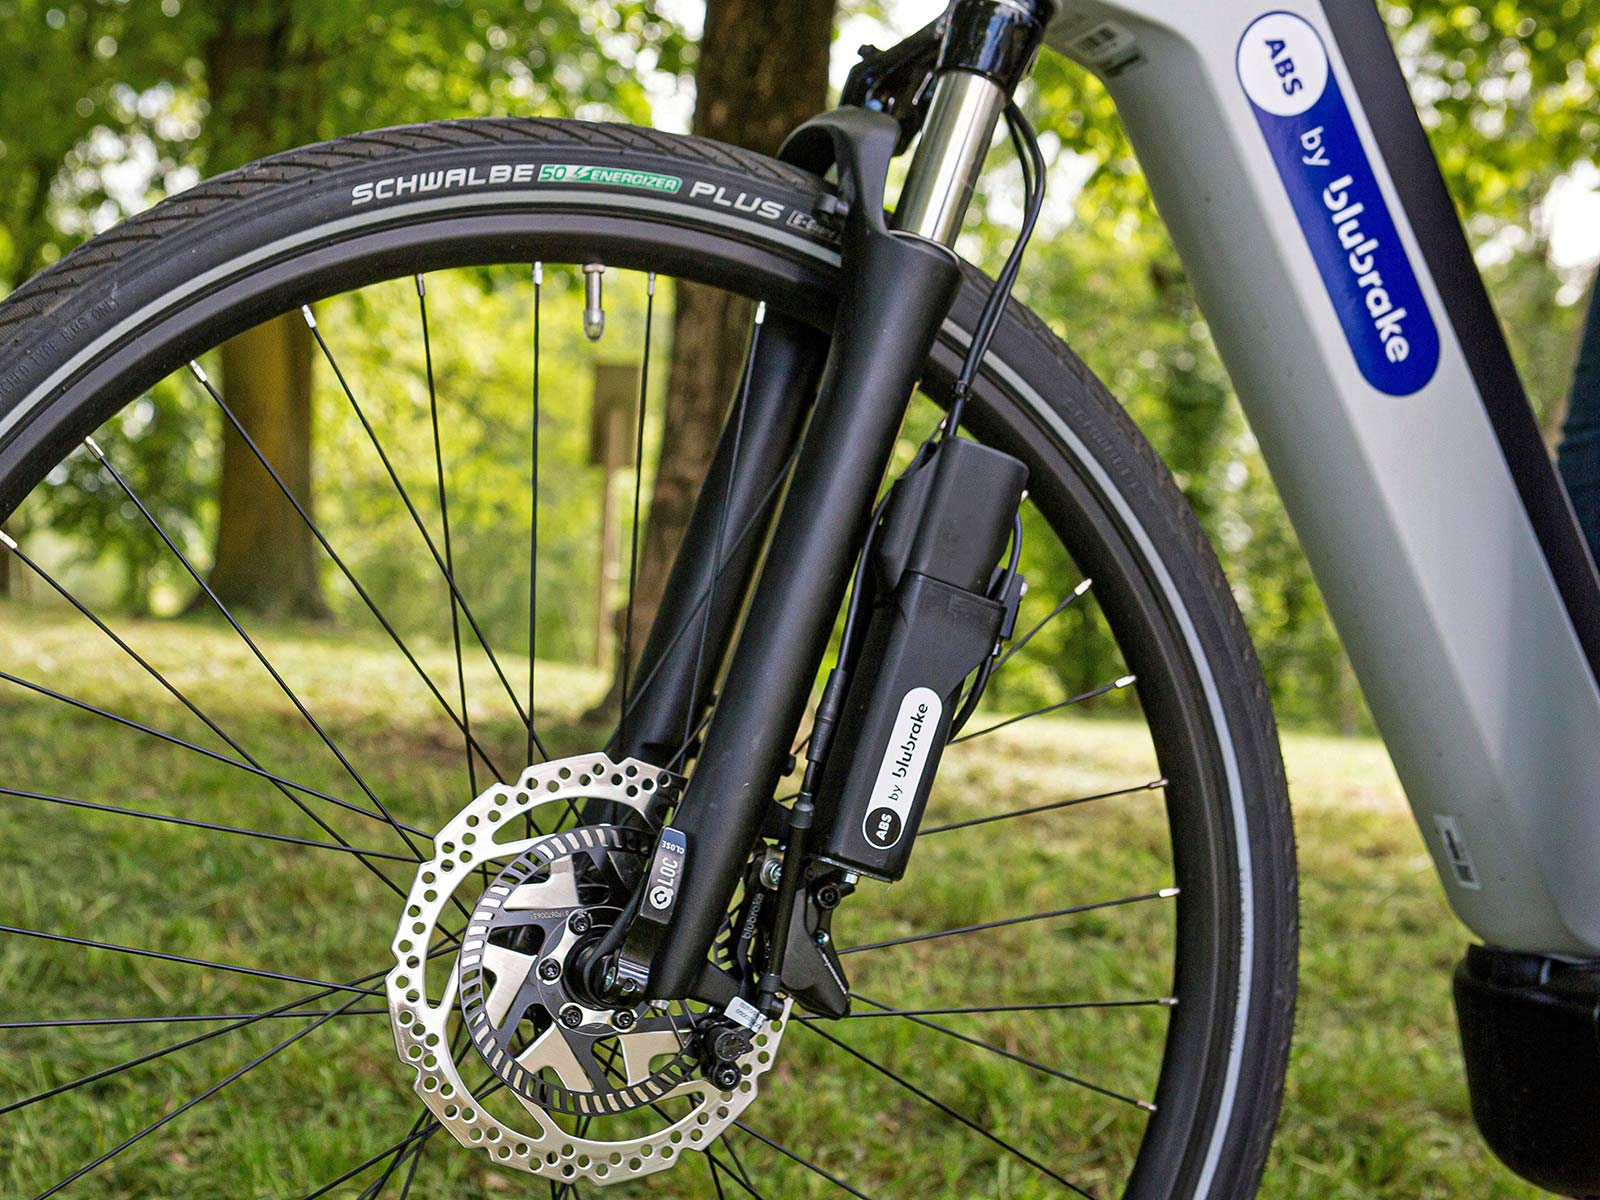 Blubrake ABS G2 bicycle anti-lock braking system, smaller lighter bike antilock brakes, external fork mount